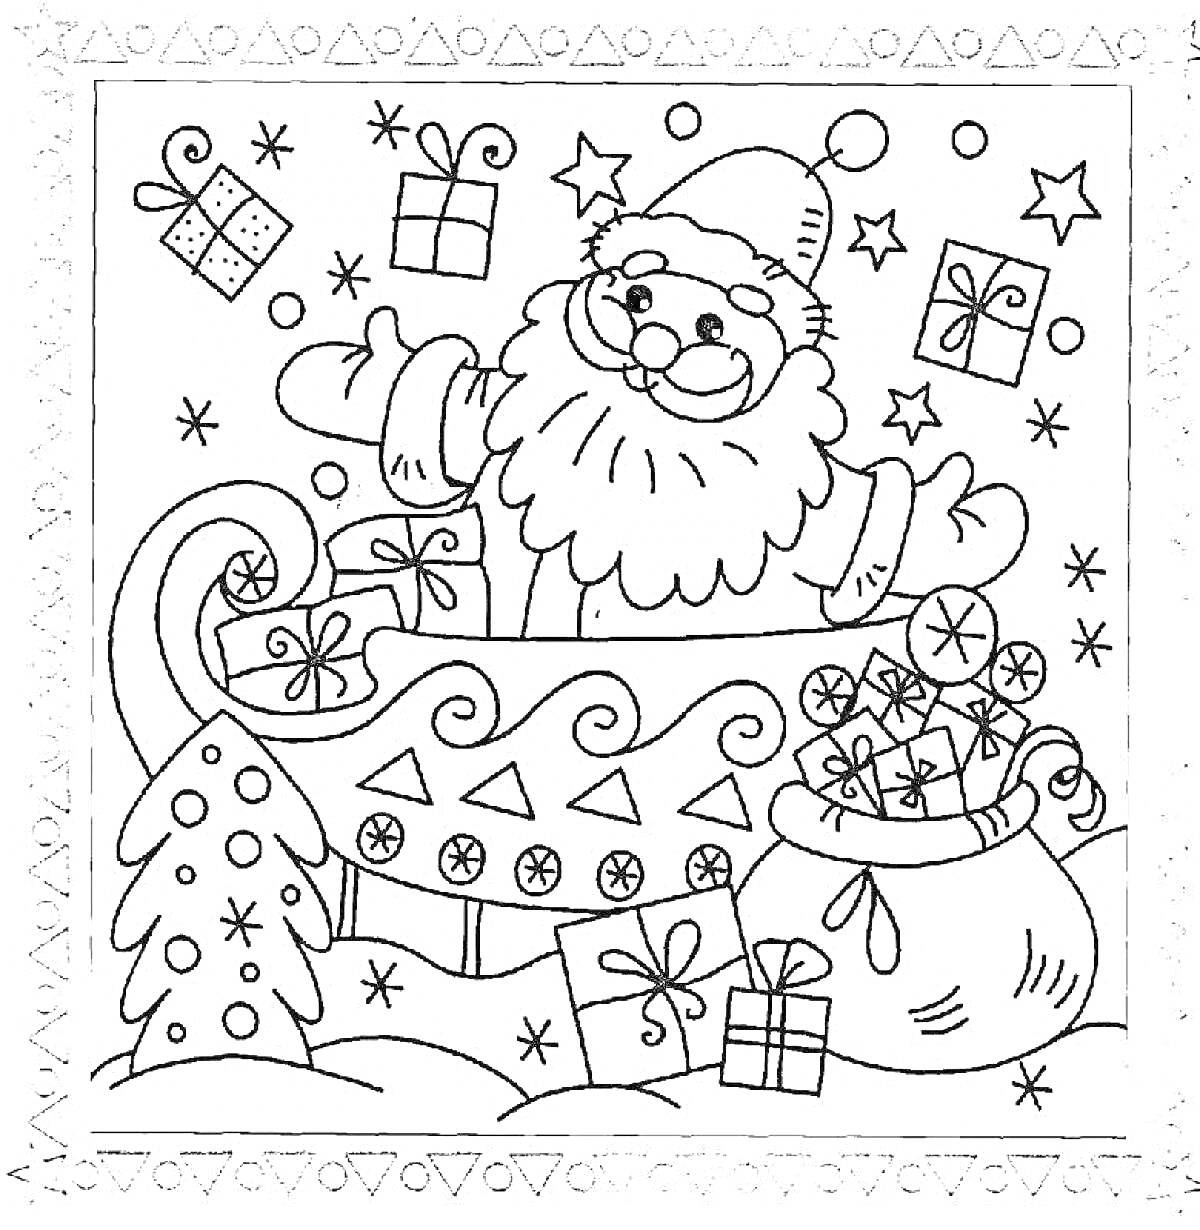 Санта-Клаус в санях с подарками и ёлкой на новогодней открытке